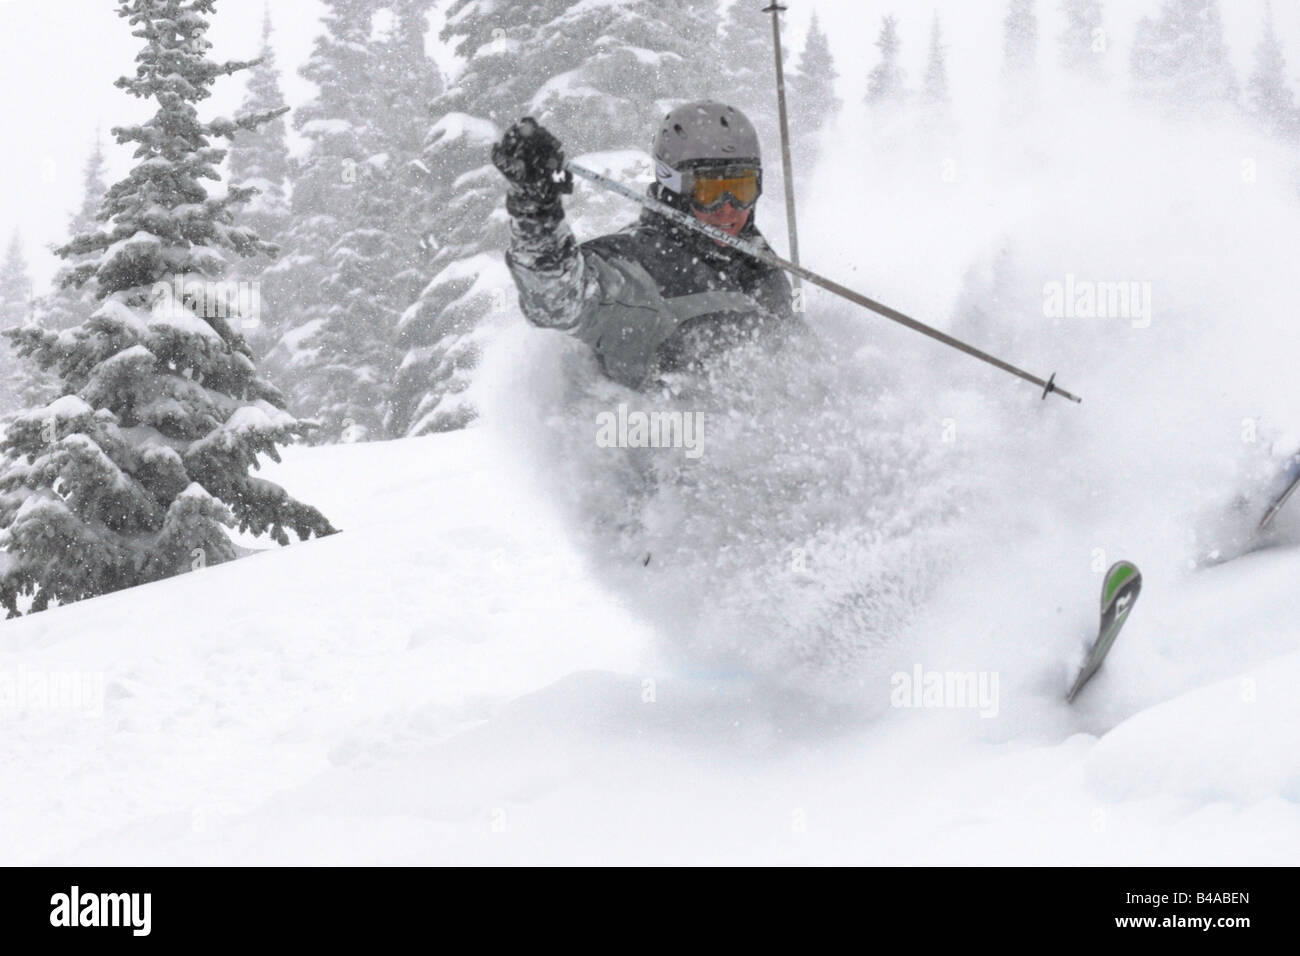 Un skieur crashin spectaculairement) tandis que le ski (neige poudreuse profonde une druign storm Banque D'Images